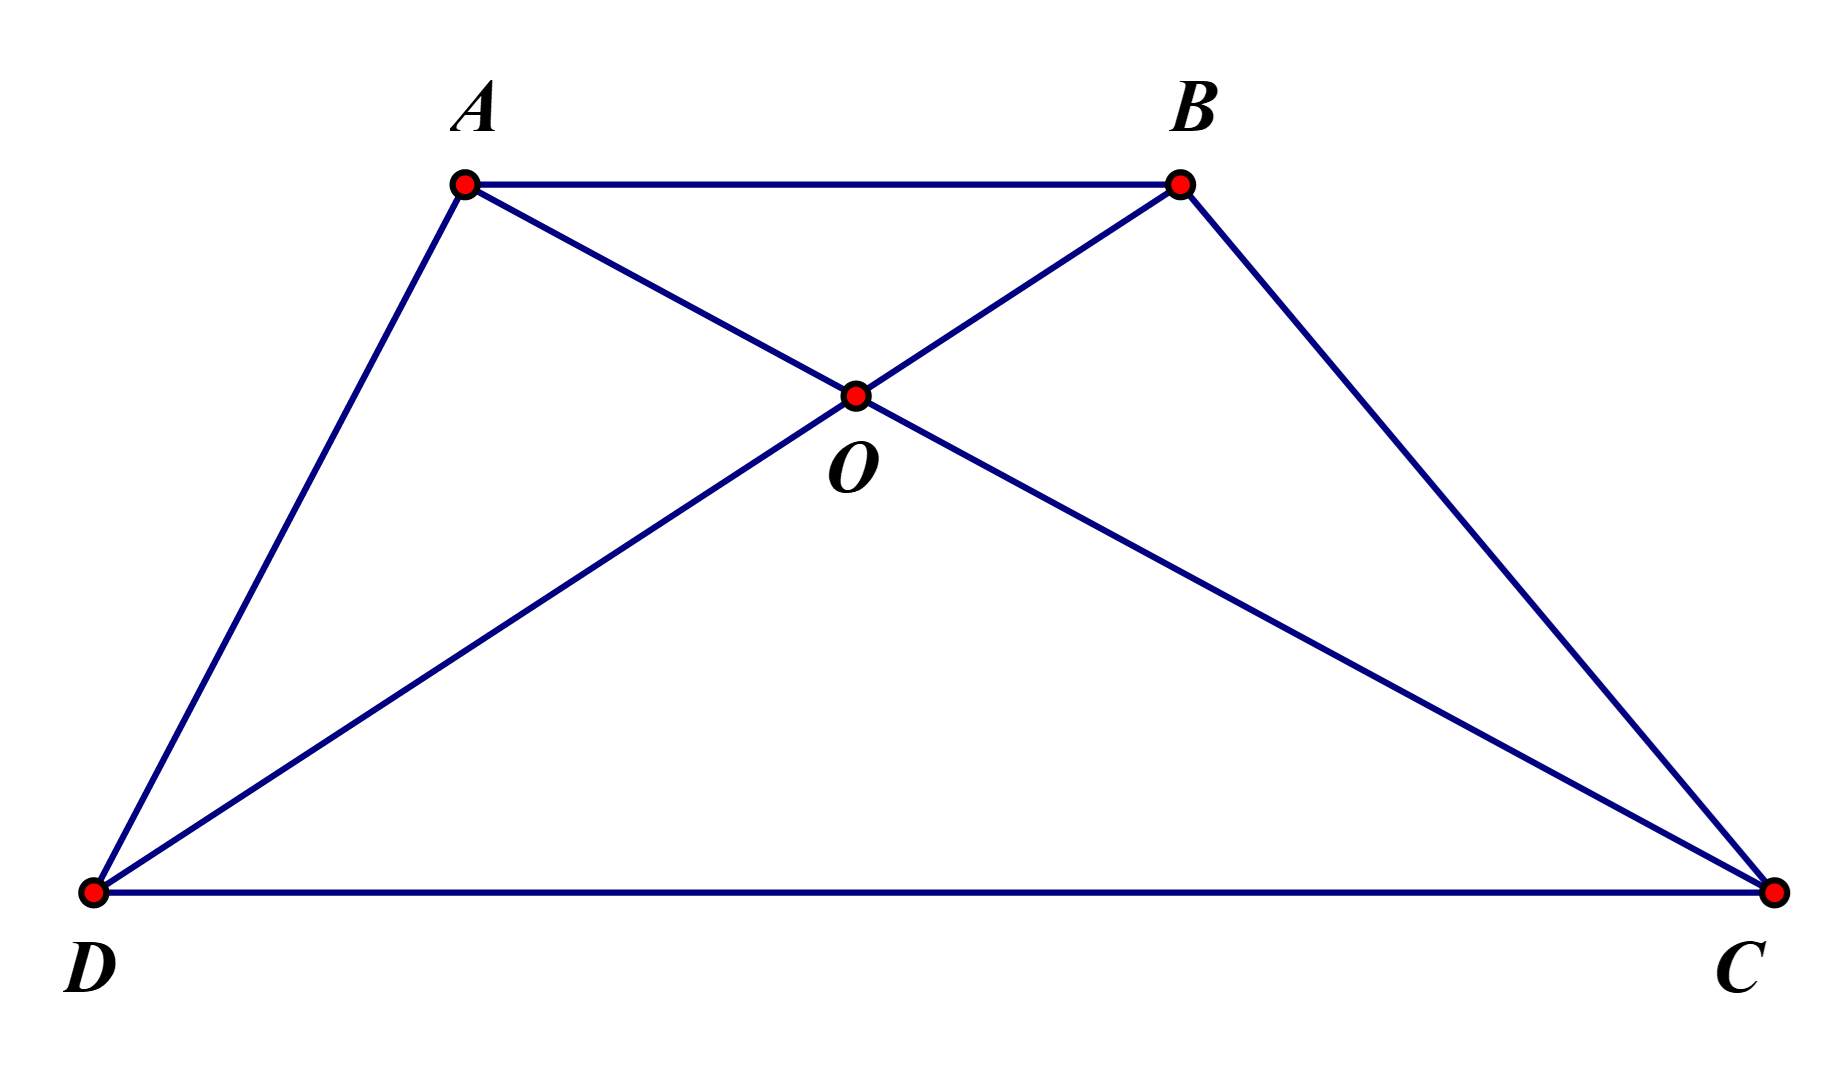 Hình thang, diện tích tam giác: Các khái niệm về hình thang và diện tích hình tam giác có thể dễ dàng được nắm bắt nếu bạn hiểu rõ các công thức và tính năng của chúng. Hãy cùng xem hình ảnh liên quan để khám phá những bí quyết cực kỳ hữu ích nhé!